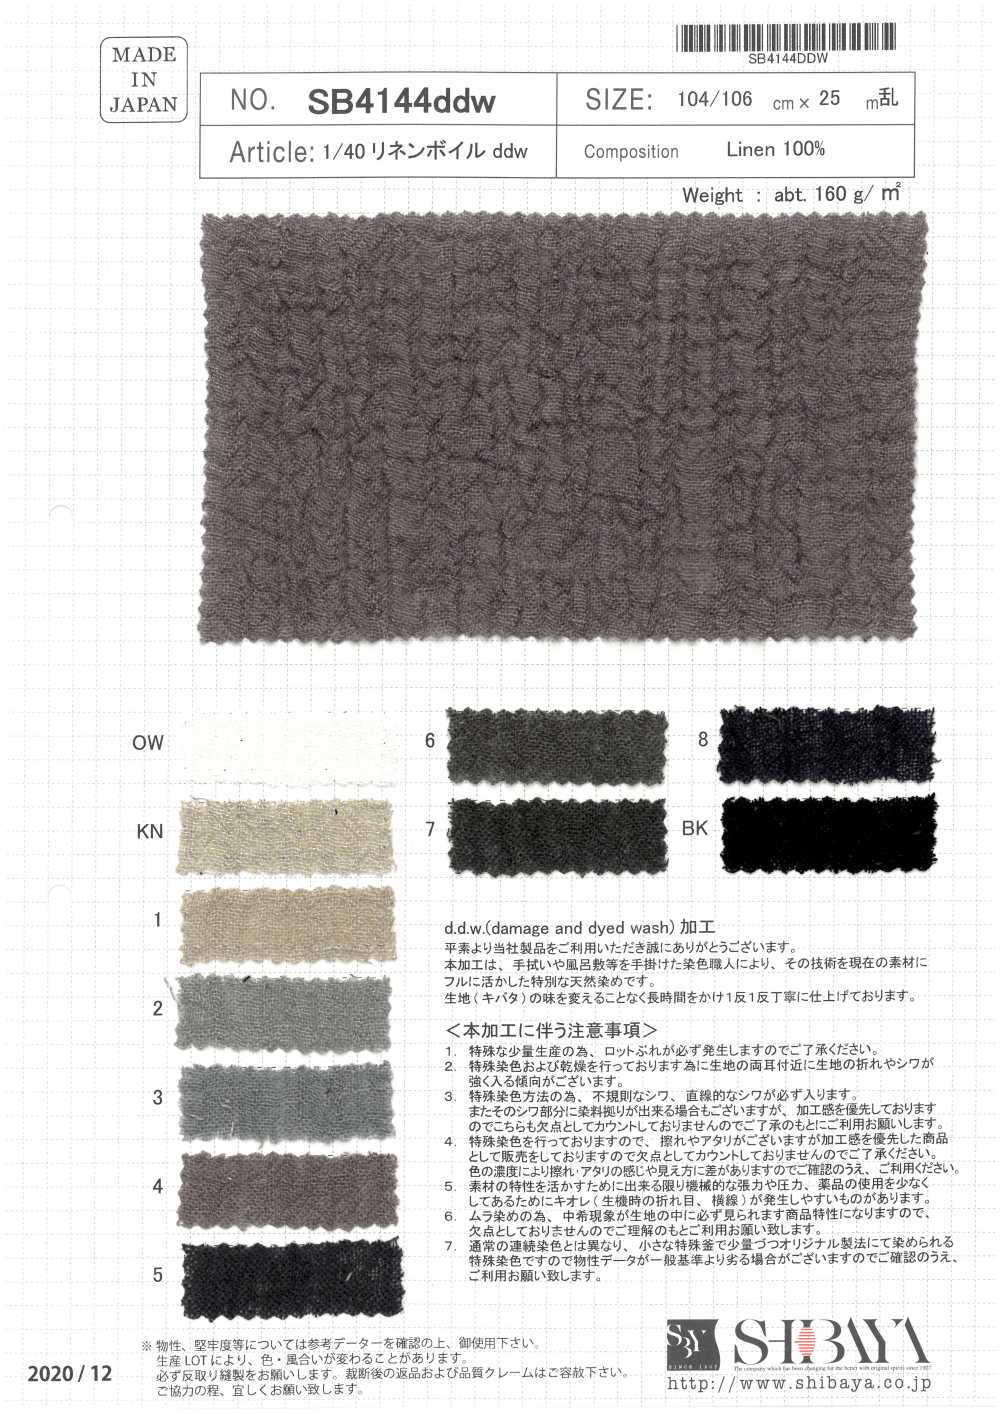 SB4144ddw 1/40 Linen Voile DDW[Textile / Fabric] SHIBAYA